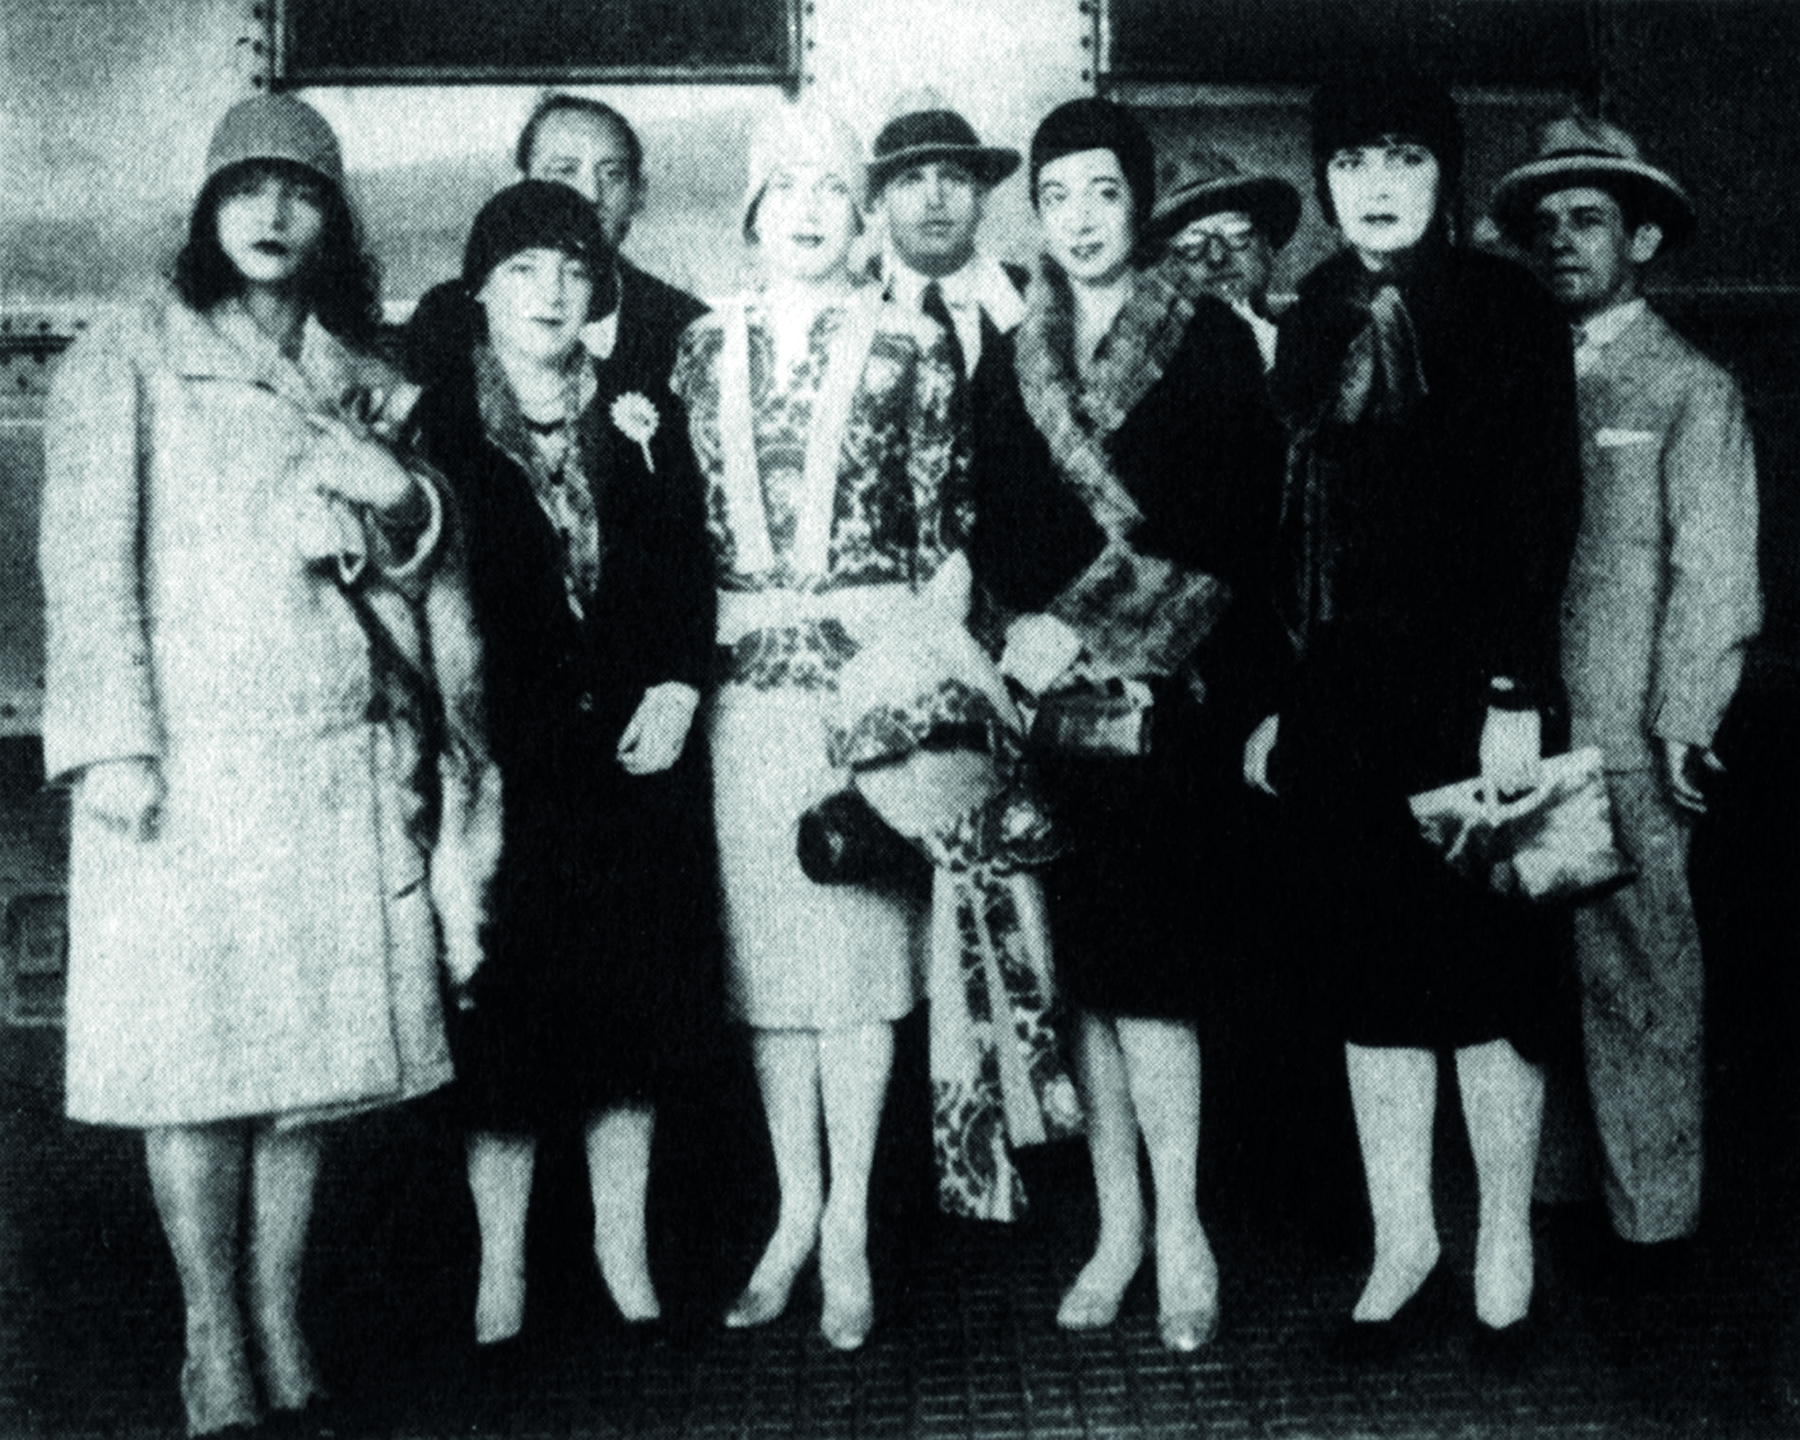 Fotografia em preto e branco. À frente, cinco mulheres vestidas elegantemente com chapéus pequenos, vestidos e casacos. Atrás, quatro homens de paletós e chapéus.